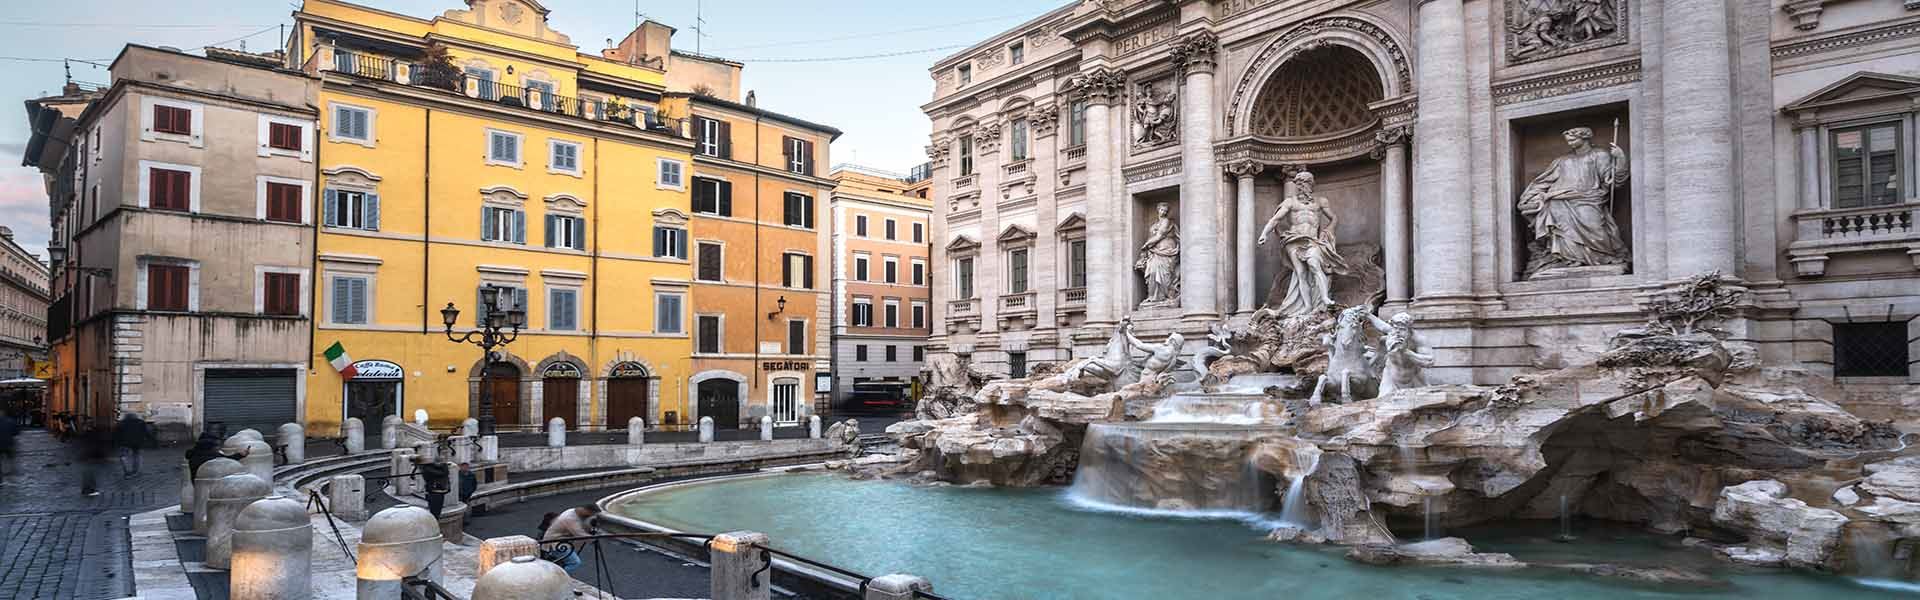 Seitenansicht des Trevi-Brunnens. Auf der rechten Seite sieht man den Brunnen mit seinem kristallklaren blauen Wasser und direkt dahinter den Palazzo Poli und sein Mauerwerk. Auf der linken Seite befinden sich mehrere orangefarbene Gebäude.